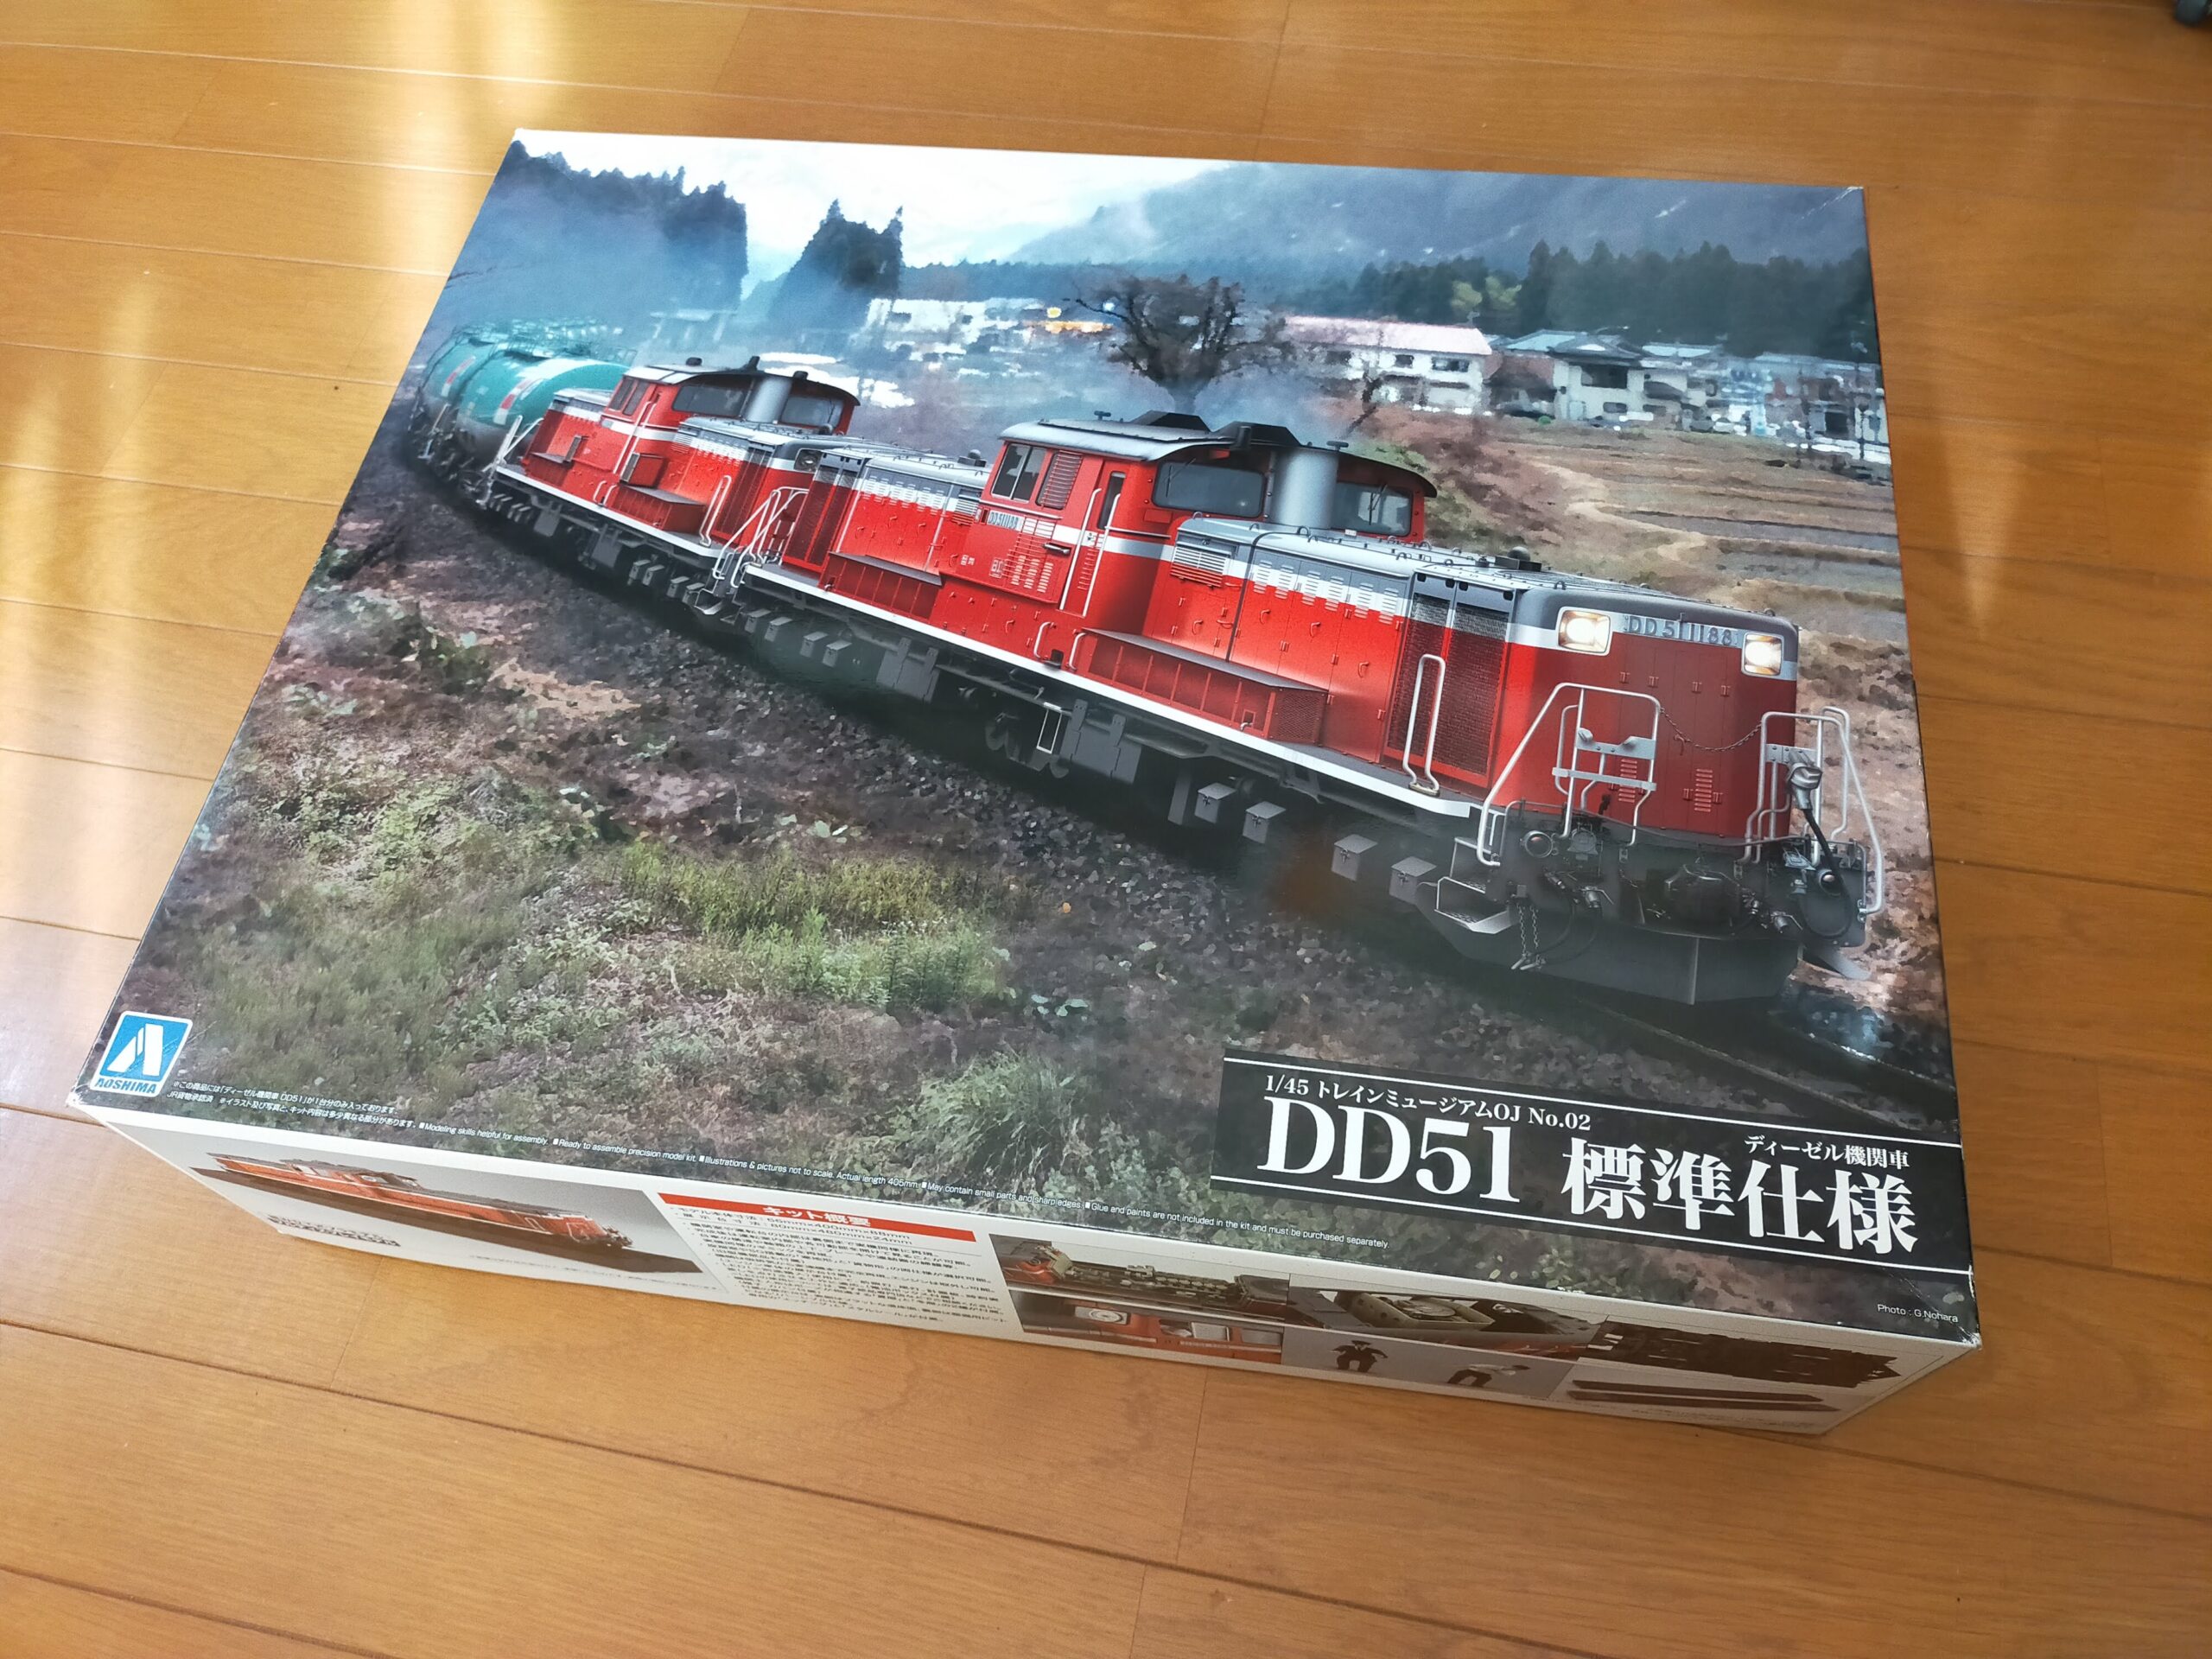 OJゲージ ディーゼル機関車DD51のディスプレイモデル - 鉄道模型